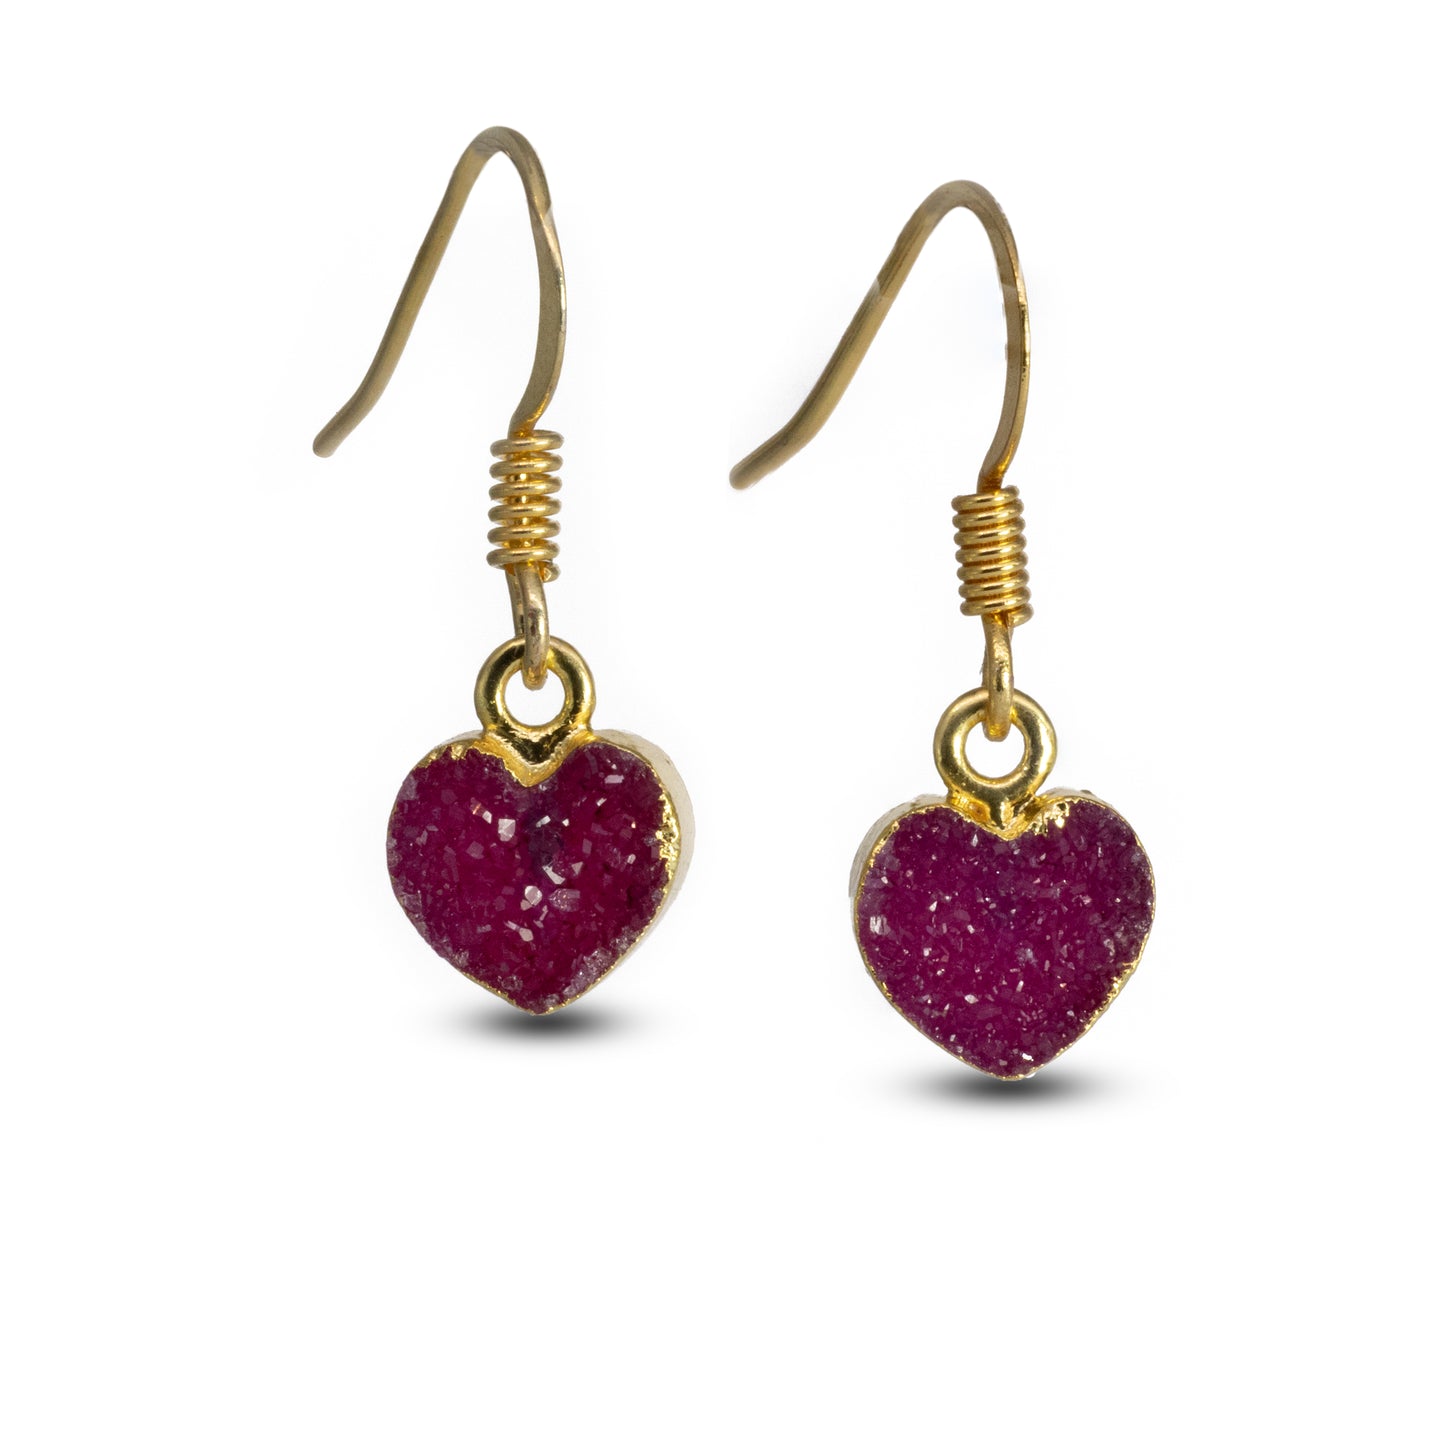 Tinny Heart Shape Druzy Quartz Dangle Earrings for Women Girls Valentine's Day Gift